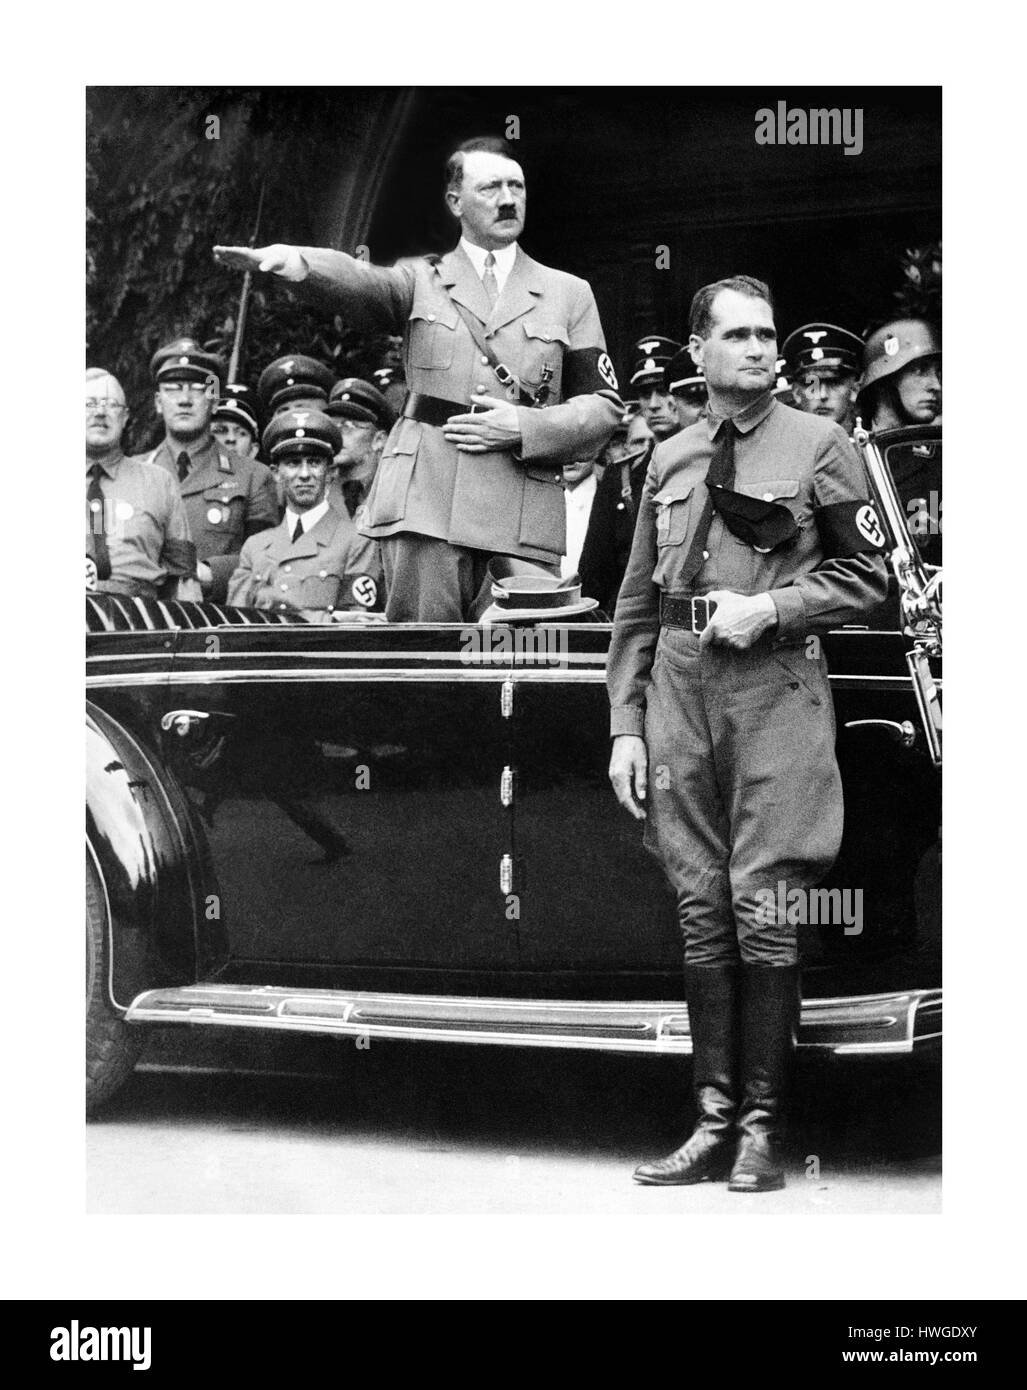 Le chancelier Adolf Hitler et son représentant personnel de Rudolf Hess, droite, au cours d'un défilé du NSDAP à Berlin, Allemagne, le 30 décembre 1938. Ministre de la propagande Joseph Goebbels peut être vu sur le côté gauche de l'image à côté de Hitler. Banque D'Images